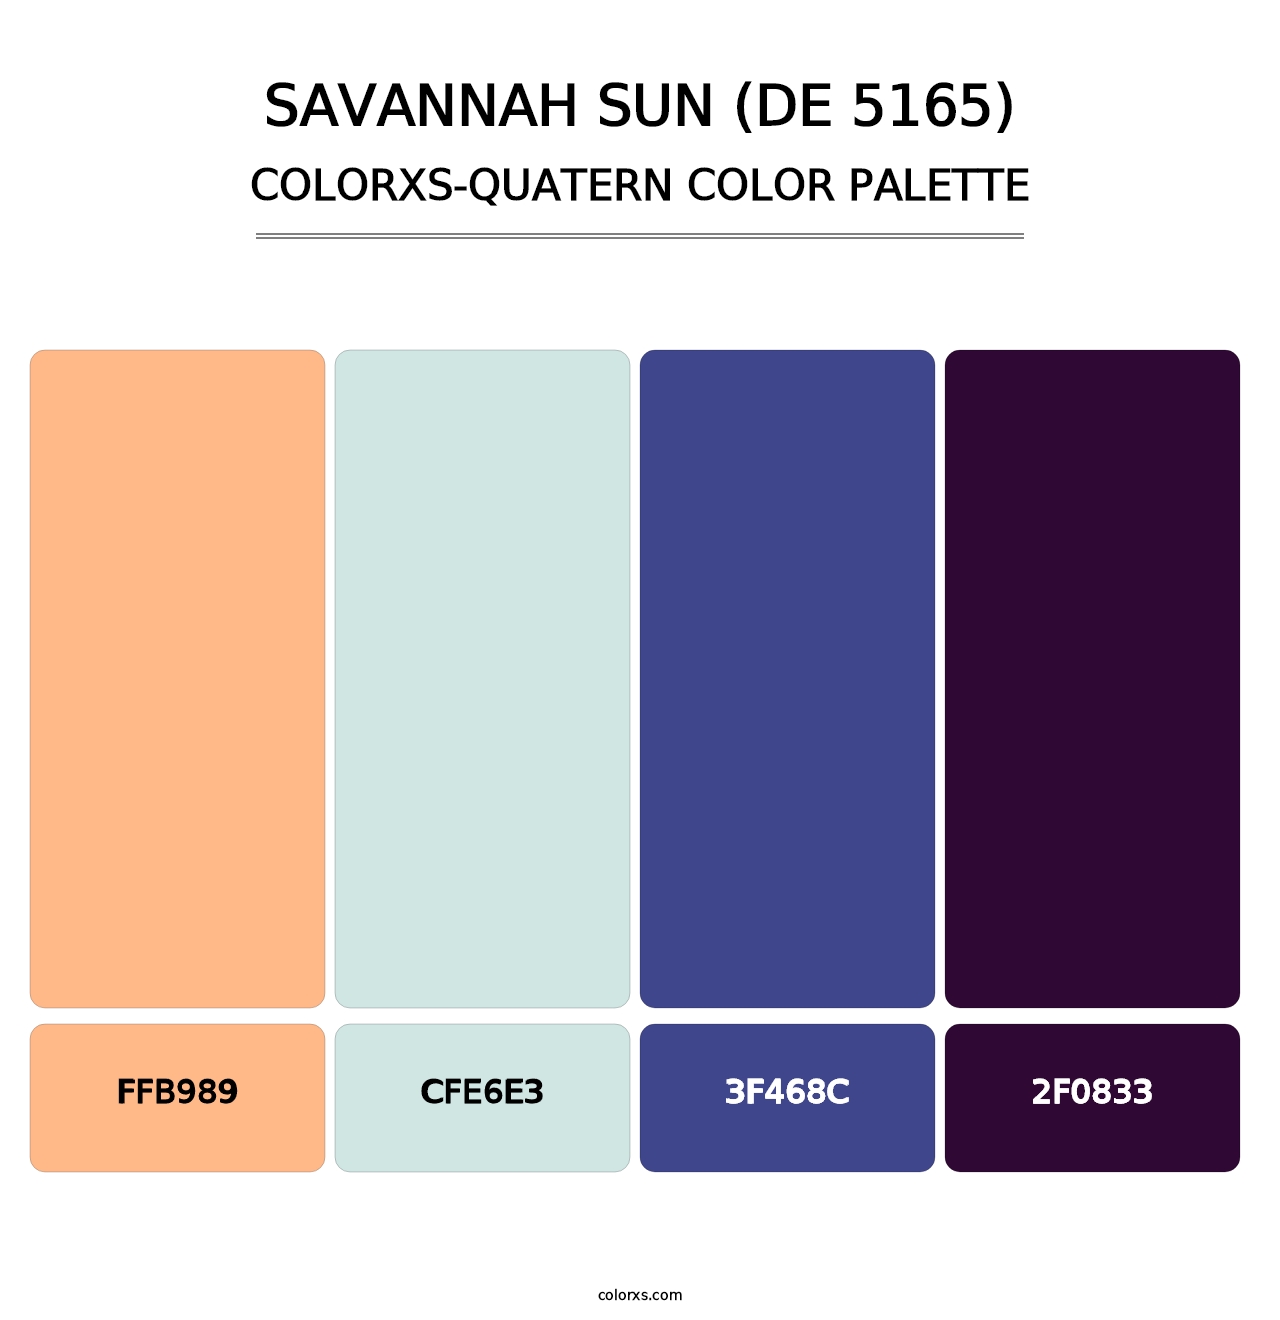 Savannah Sun (DE 5165) - Colorxs Quatern Palette